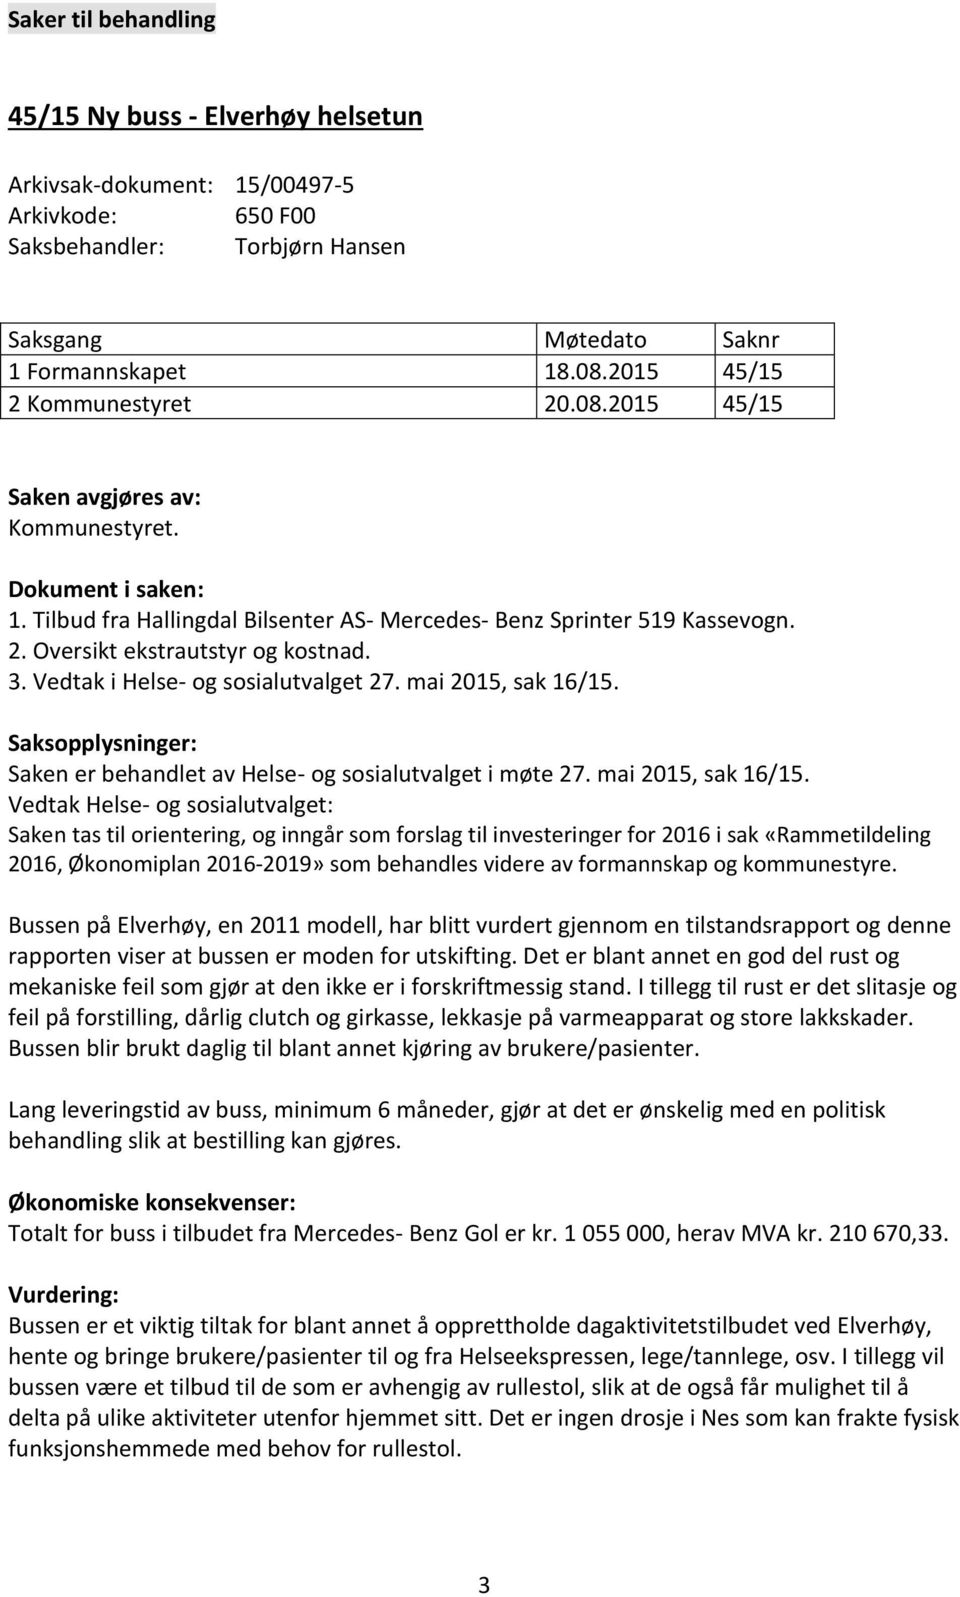 3. Vedtak i Helse- og sosialutvalget 27. mai 2015, sak 16/15.